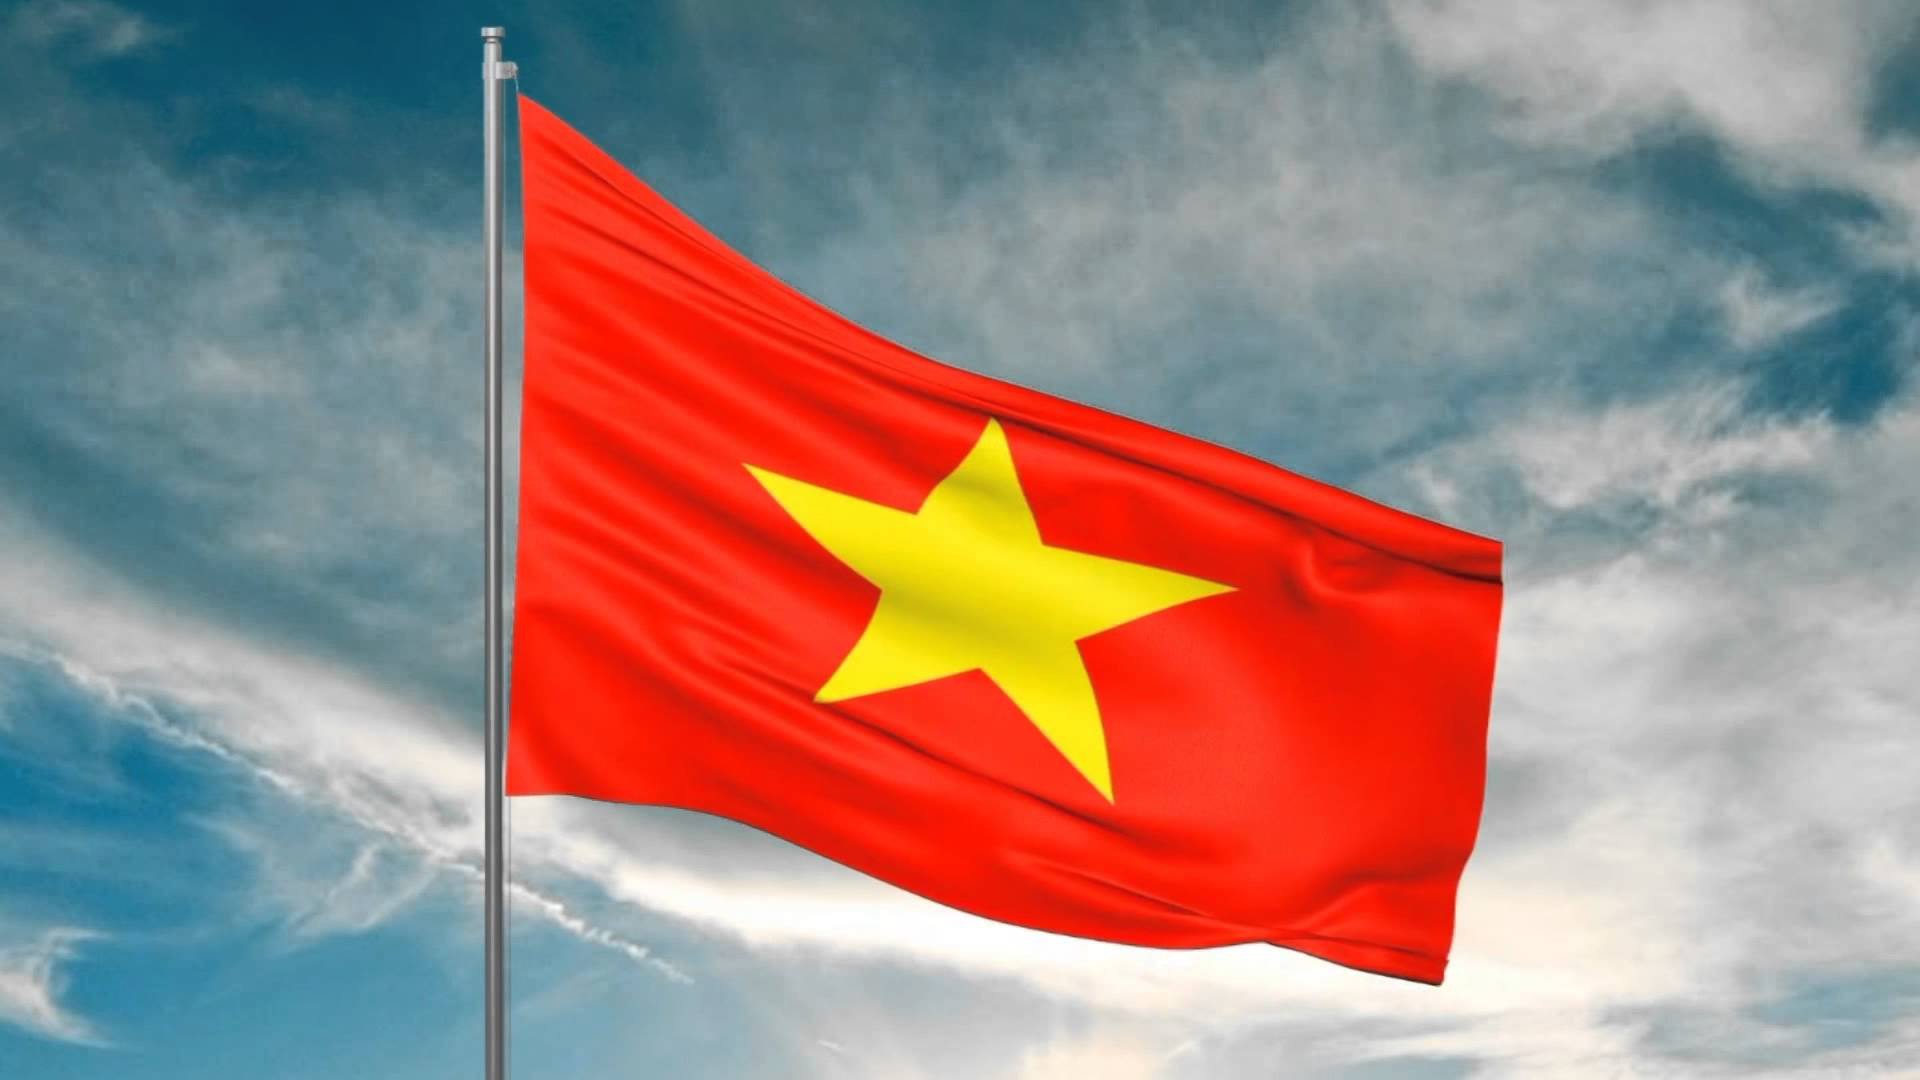 Lá cờ Tổ quốc: Lá cờ Tổ quốc là một trong những biểu tượng đặc trưng nhất của Việt Nam và là nguồn cảm hứng cho nhiều thế hệ. Tham gia vào các hoạt động quốc gia và văn hoá liên quan đến lá cờ Tổ quốc, bạn sẽ hiểu được những giá trị văn hóa và lịch sử sâu sắc của dân tộc Việt Nam. Vào năm 2024, hãy tận hưởng vẻ đẹp của lá cờ Tổ quốc thông qua việc tham gia vào các sự kiện quan trọng và tổ chức cá nhân.